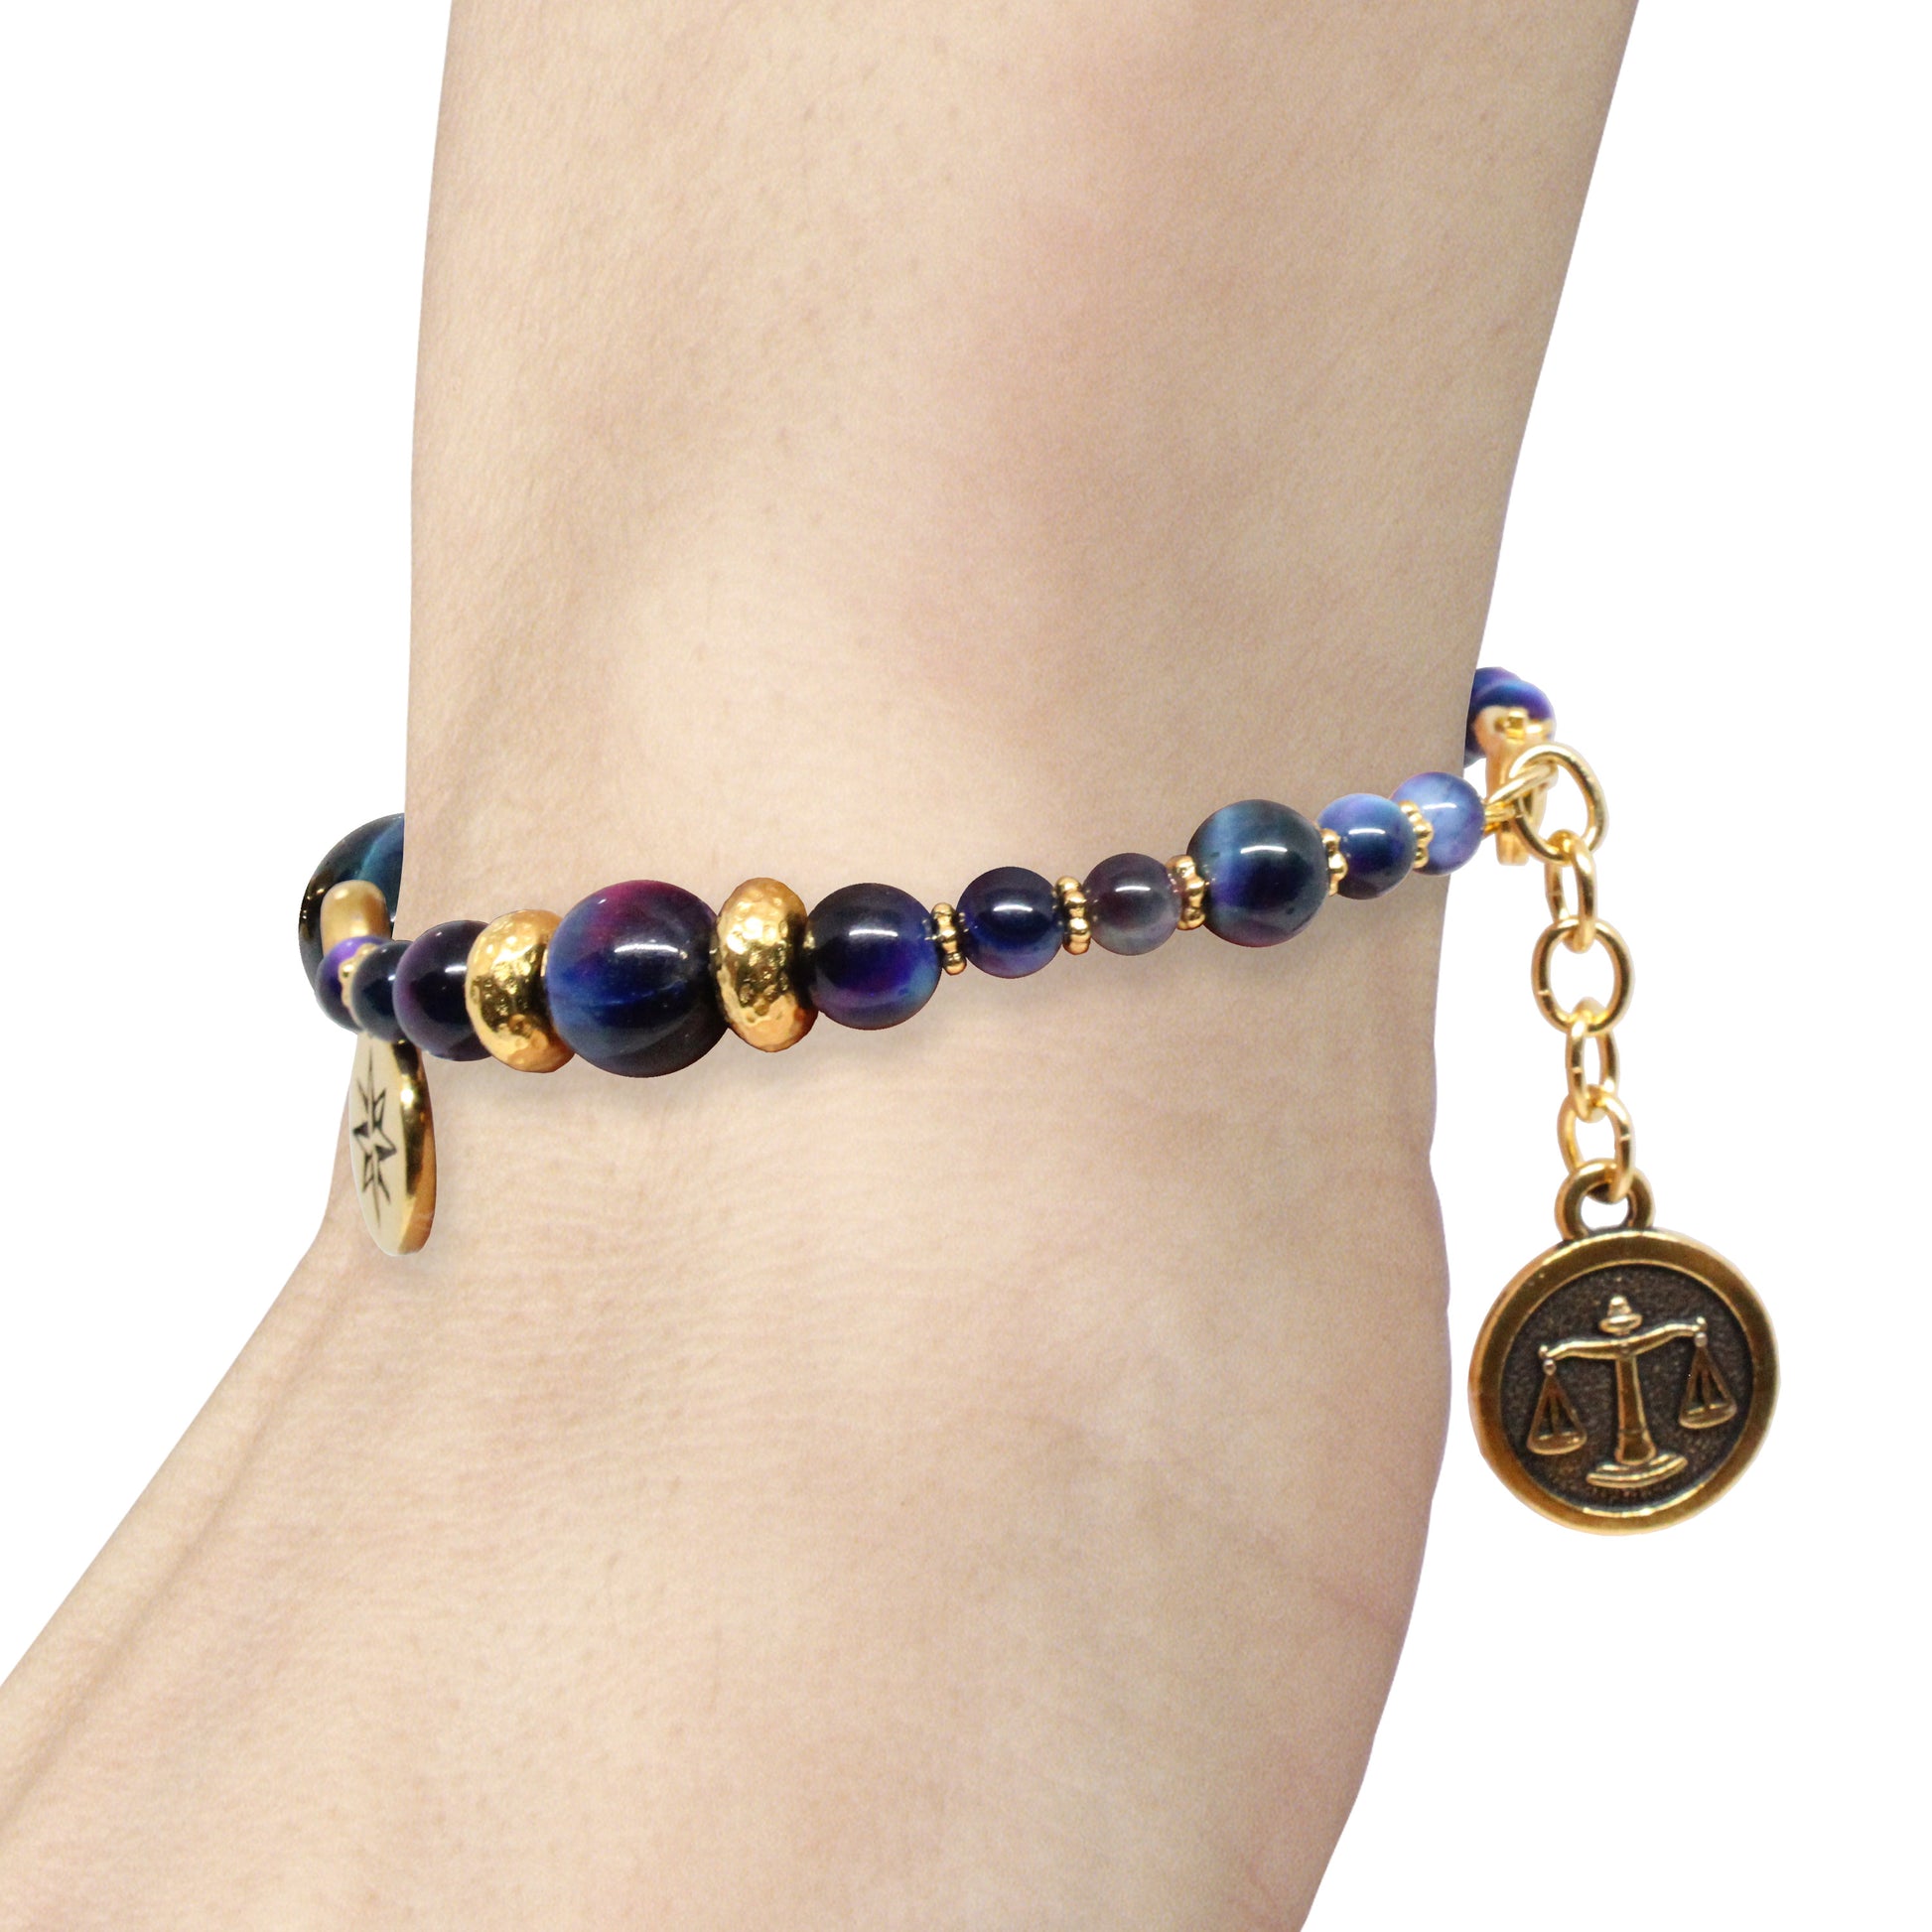 Rainbow Tiger's Eye Bracelet with zodiac charm / 6 to 7 Inch wrist